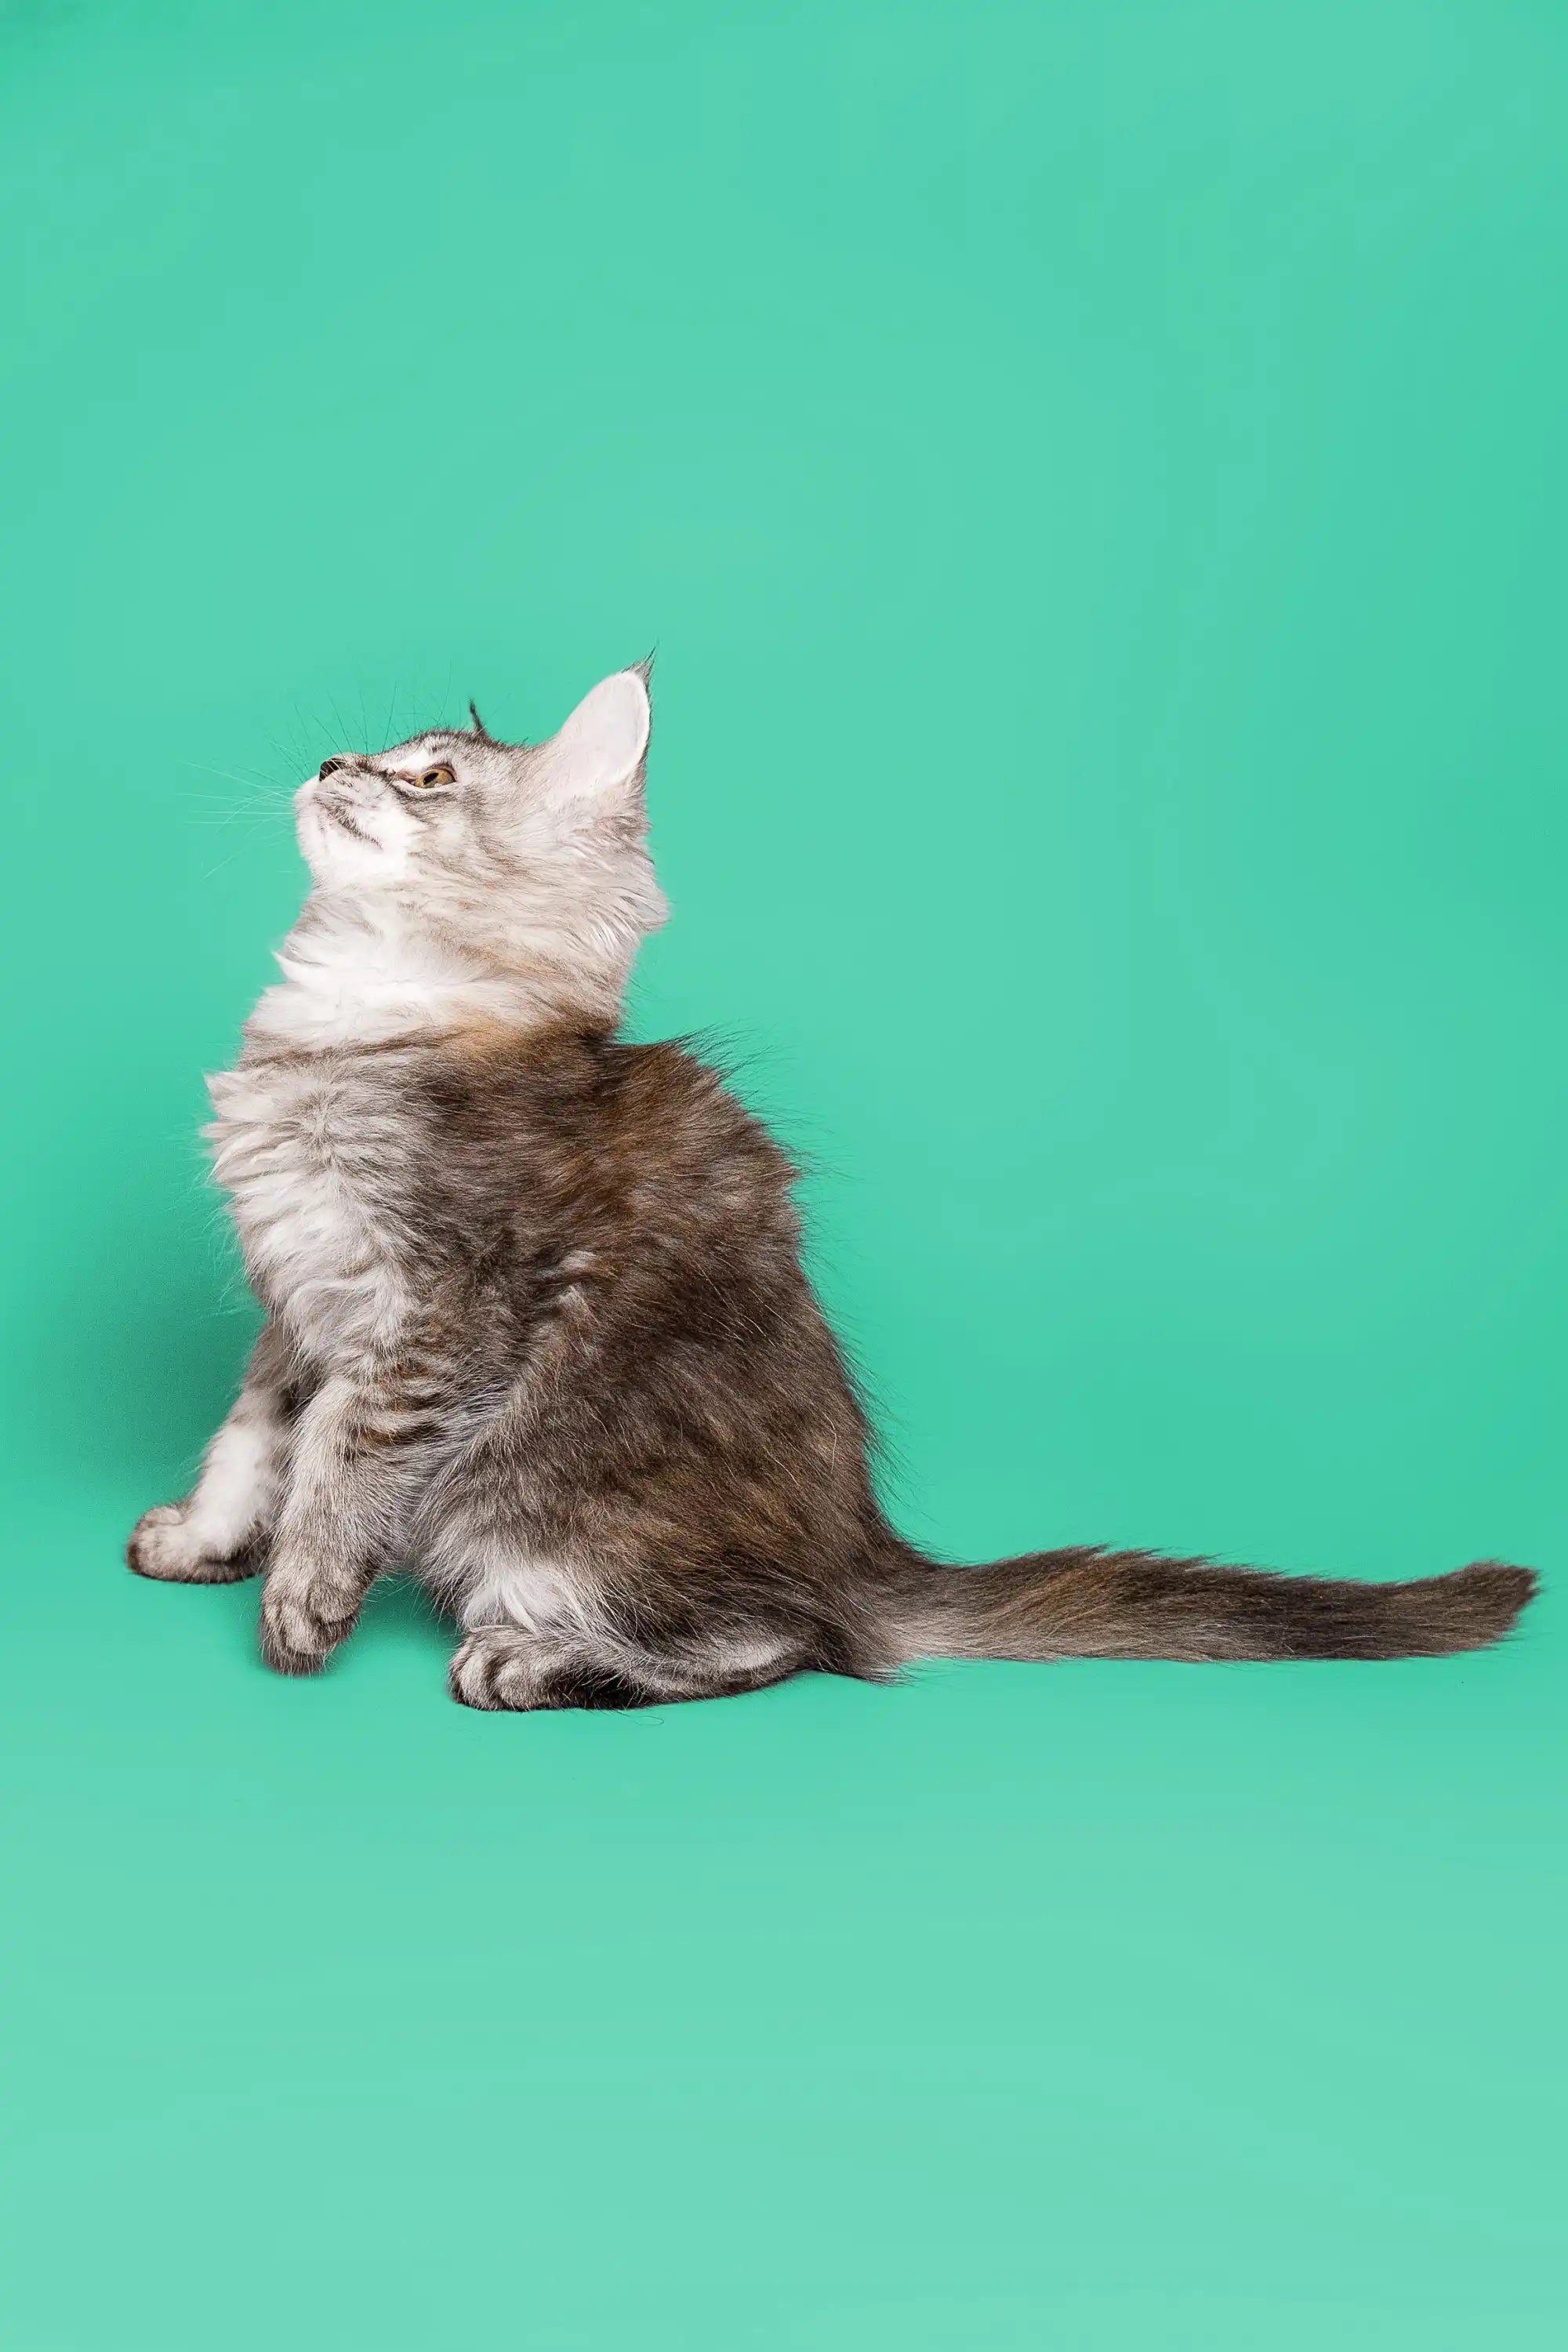 Maine Coon Kittens for Sale Pandora | Kitten